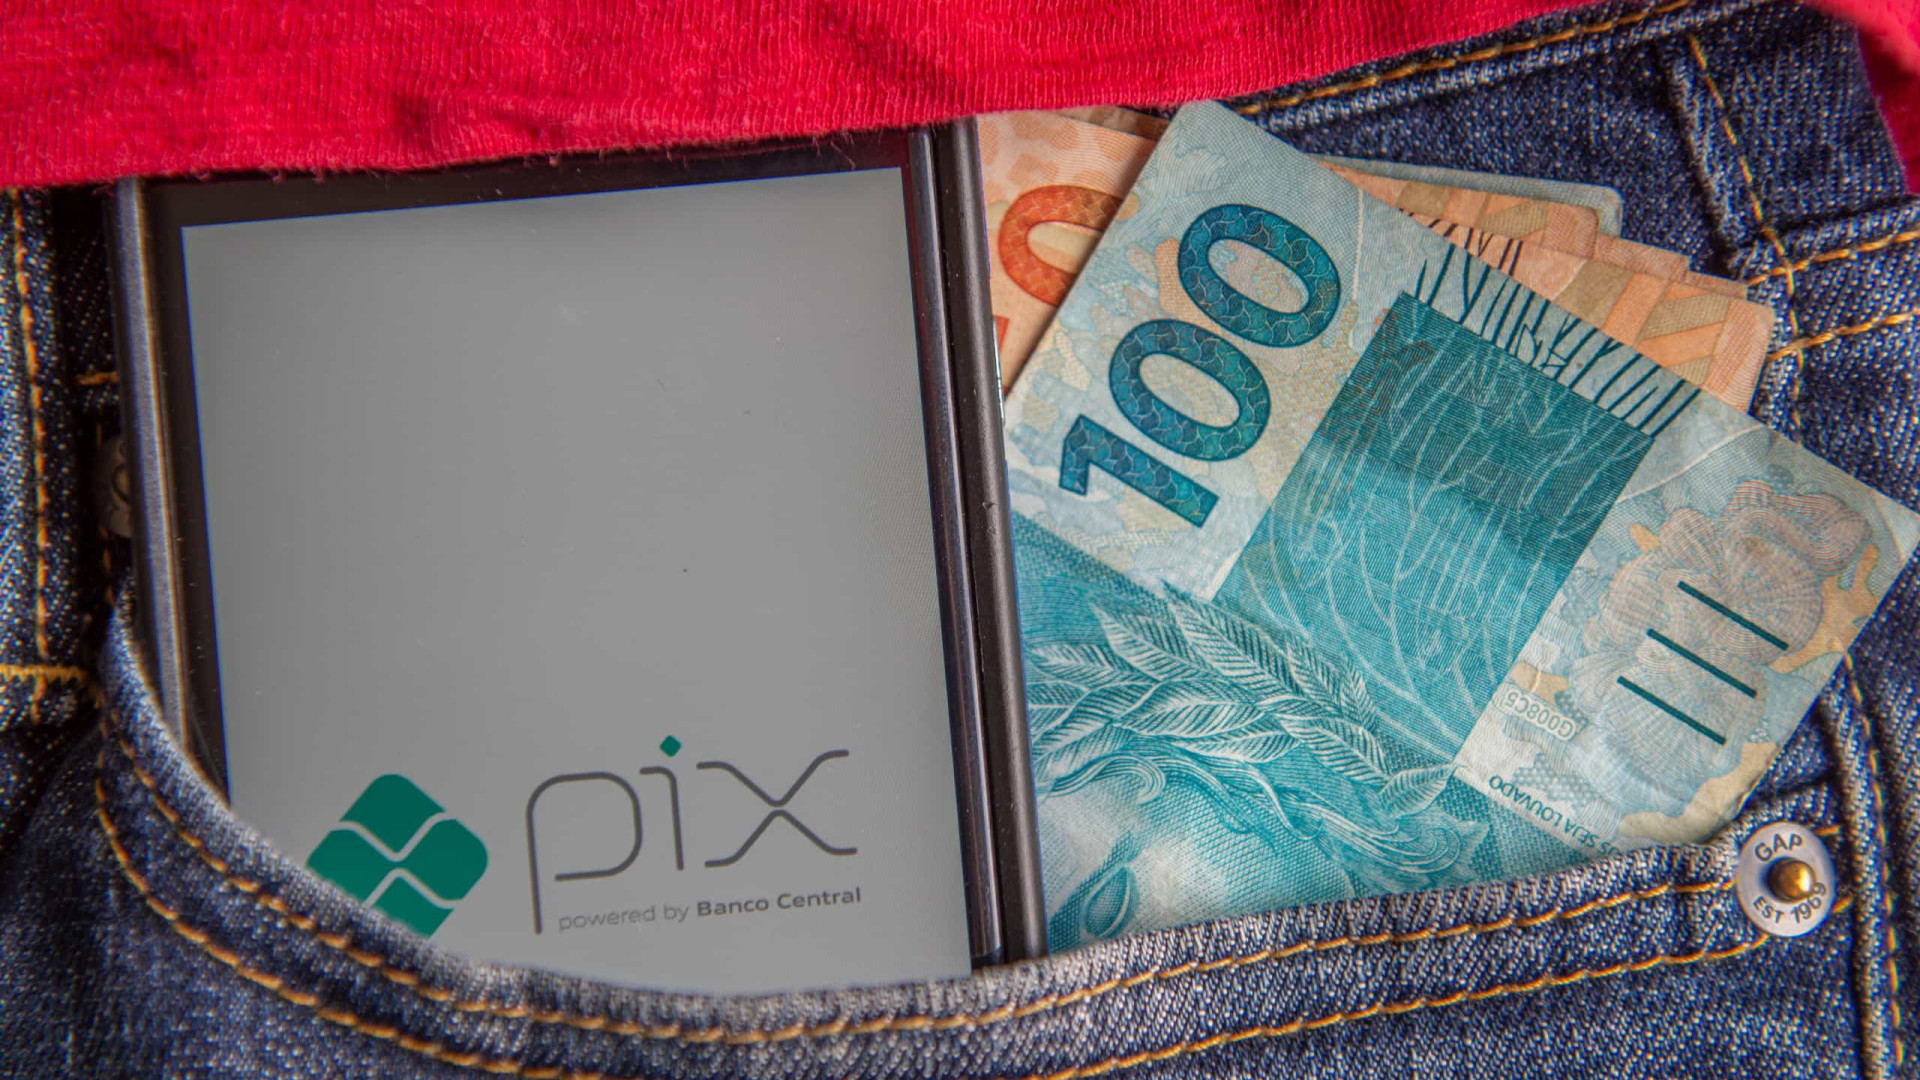 Pix bate recorde de transações com 152,7 milhões em um único dia